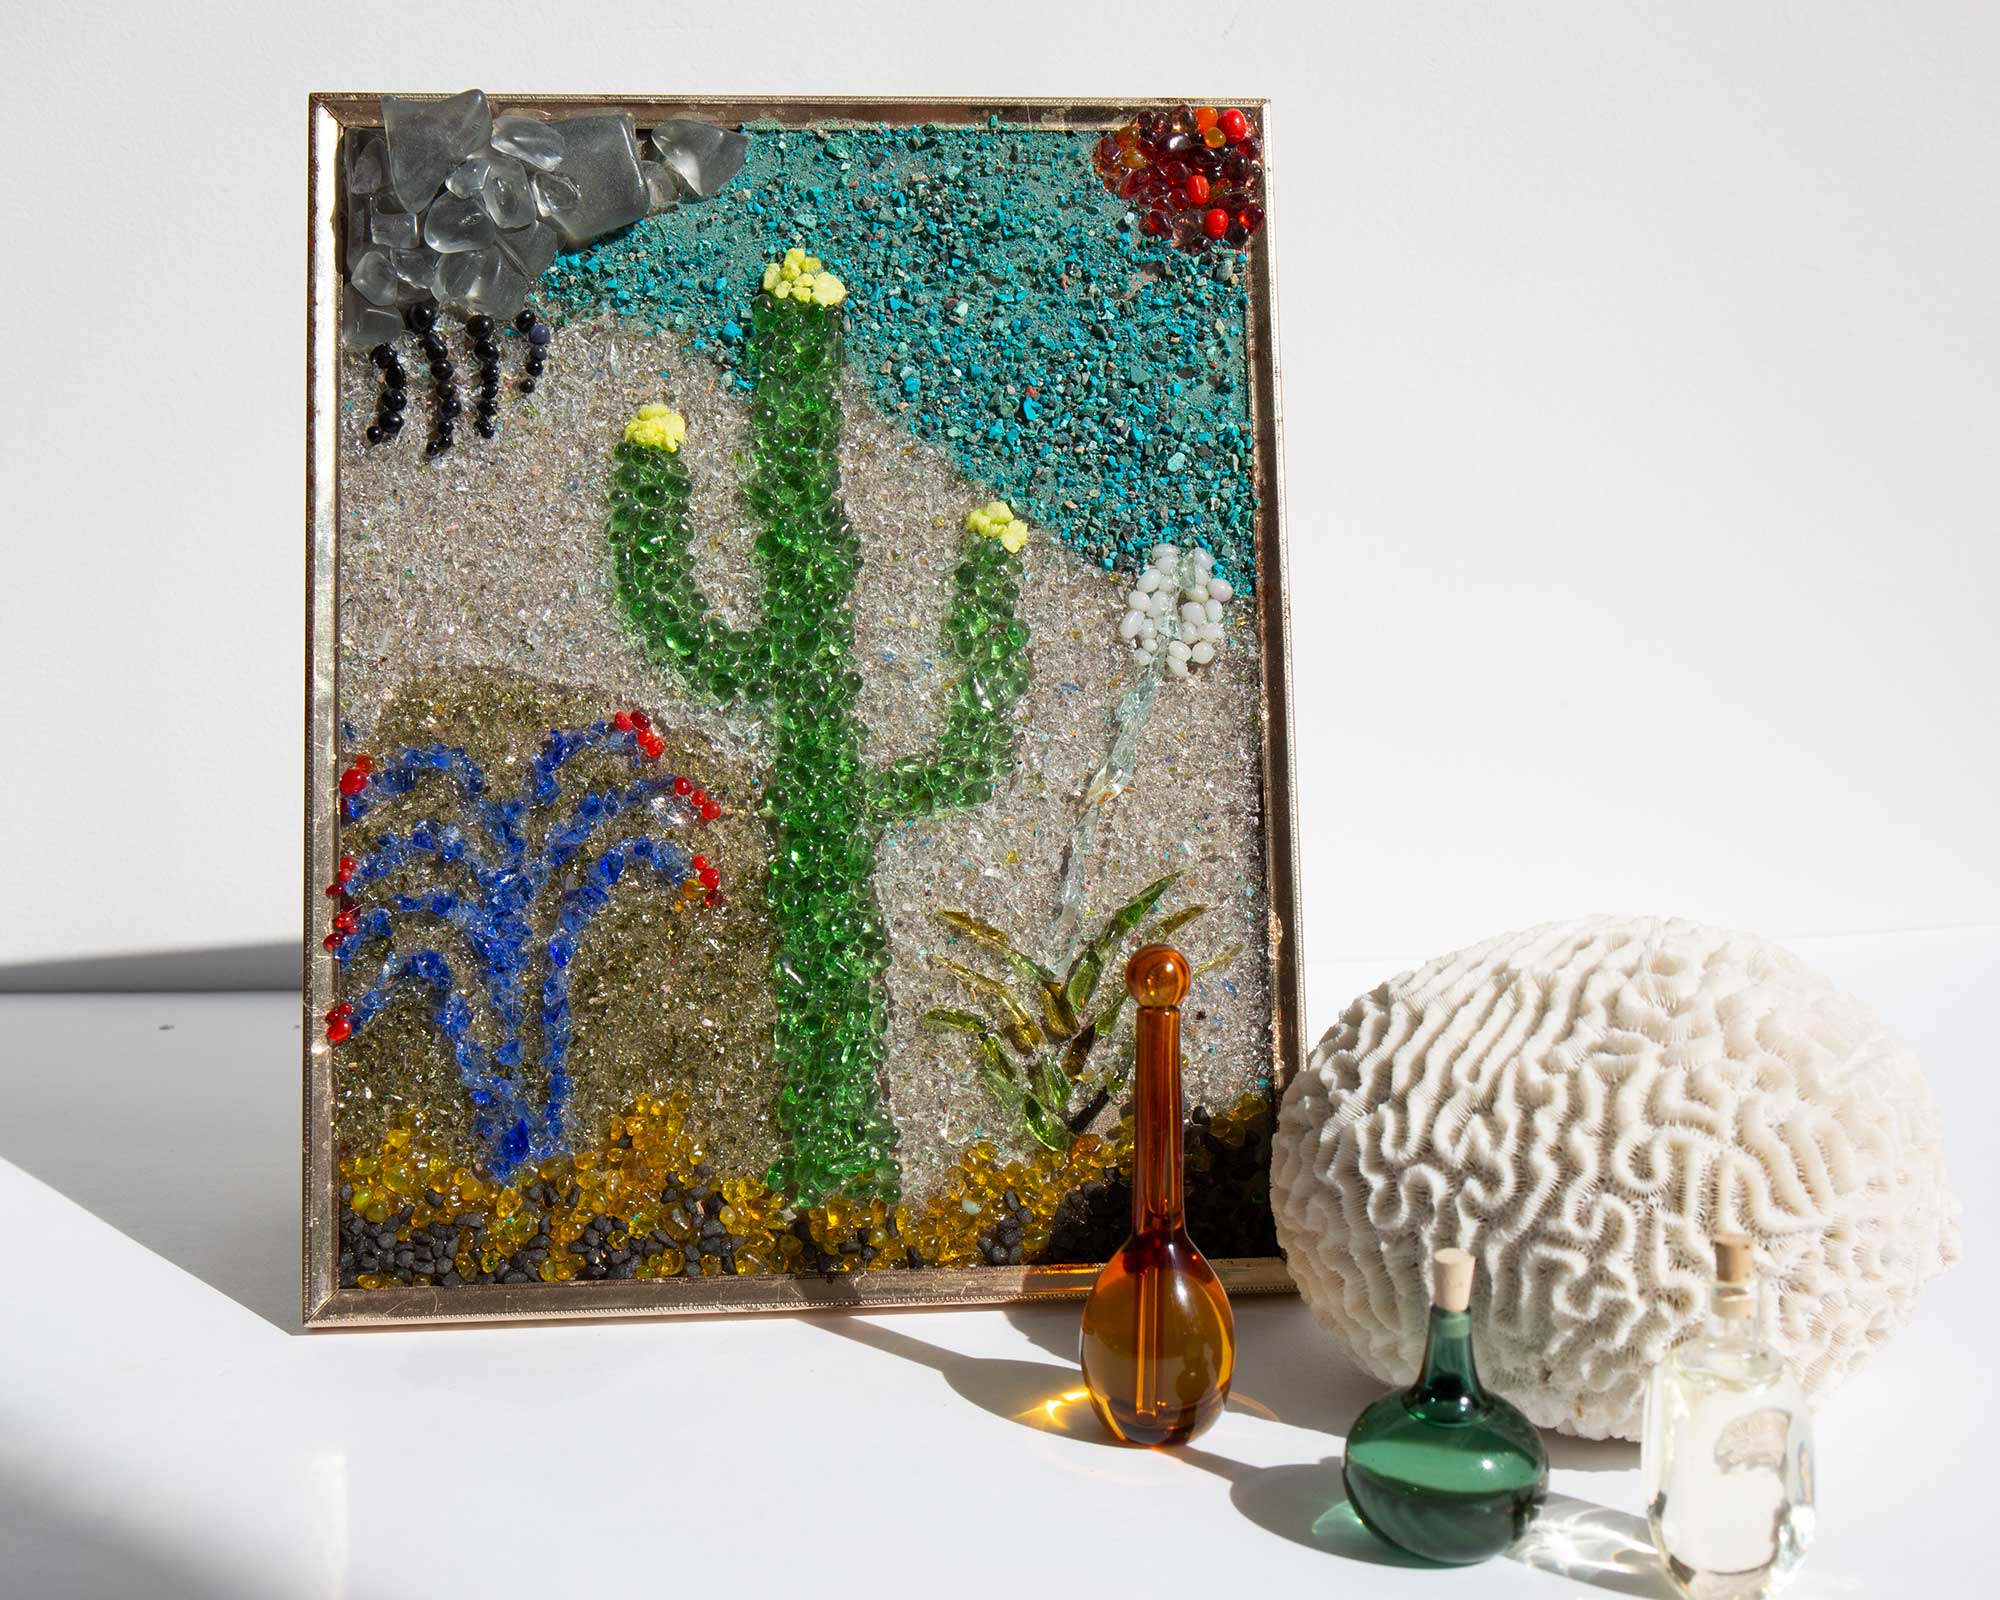 Folk Art Saguaro Mosaic